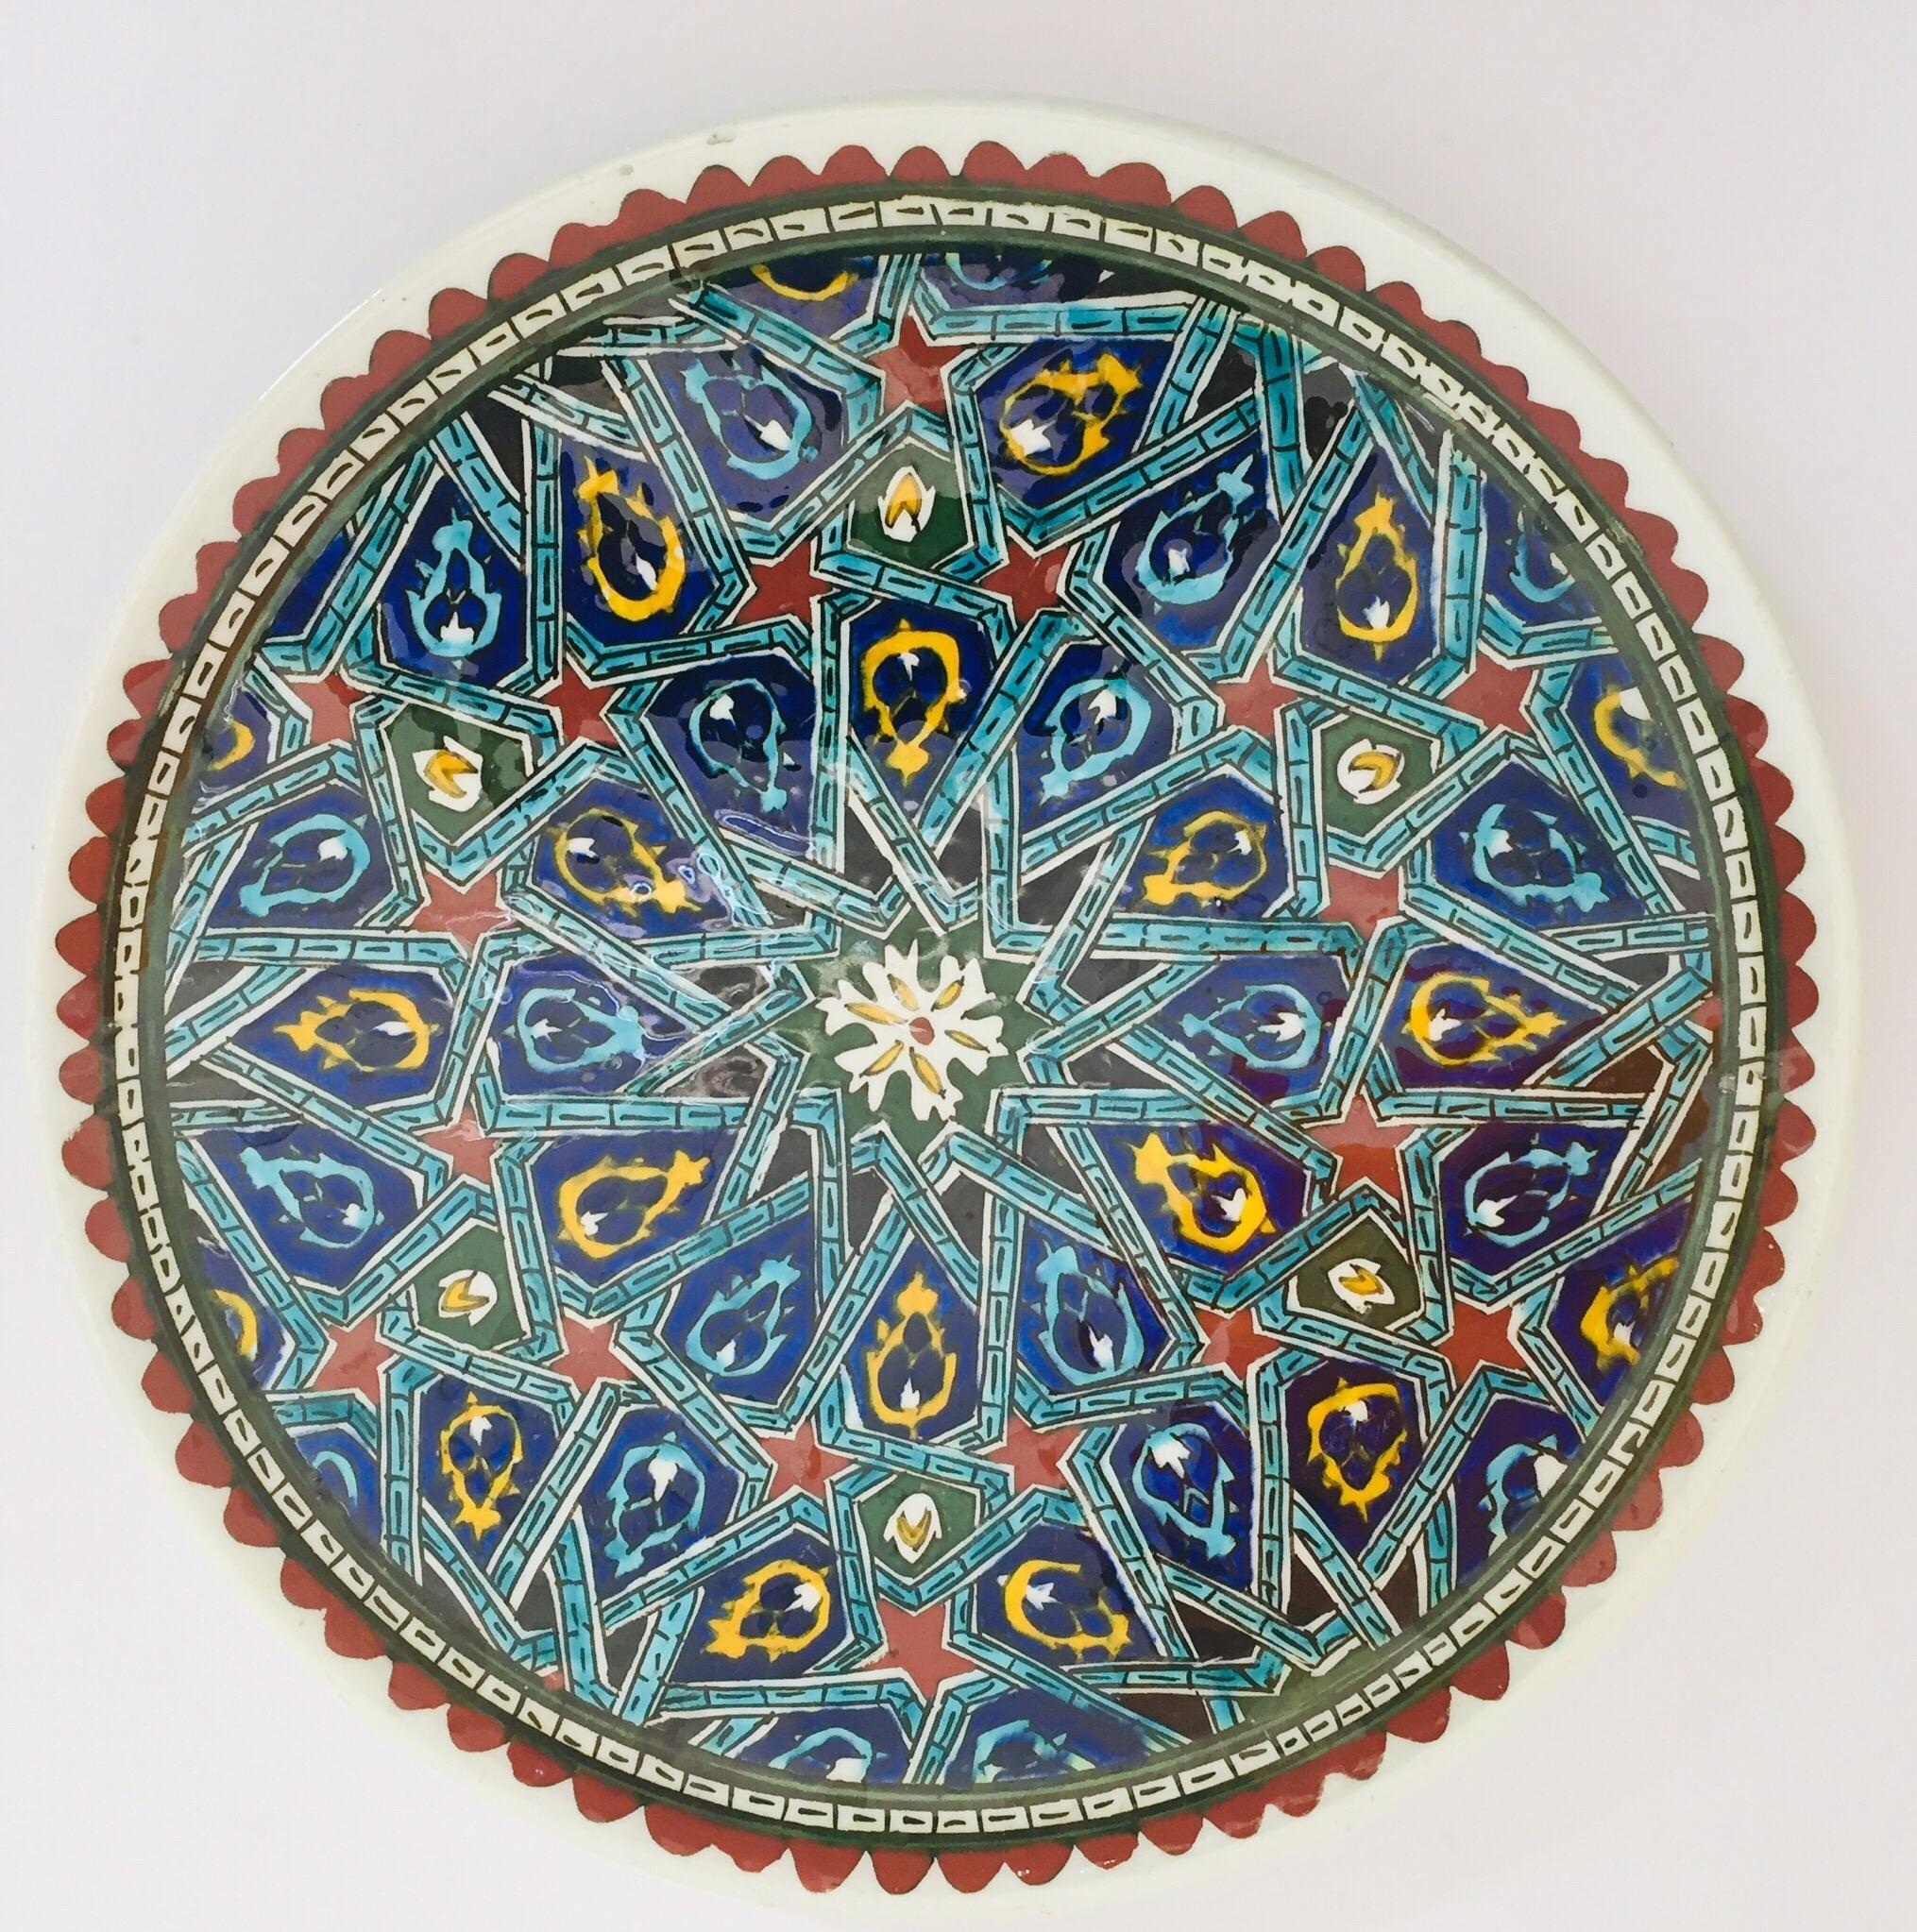 Polychromer handbemalter und handgefertigter Wandteller aus Keramik mit polychromem osmanischem Blumendesign.
Dies ist ein aufwändig handbemalter maurischer Teller, der in der Türkei hergestellt wurde.
Die Türkei ist berühmt für ihre Ofenprodukte